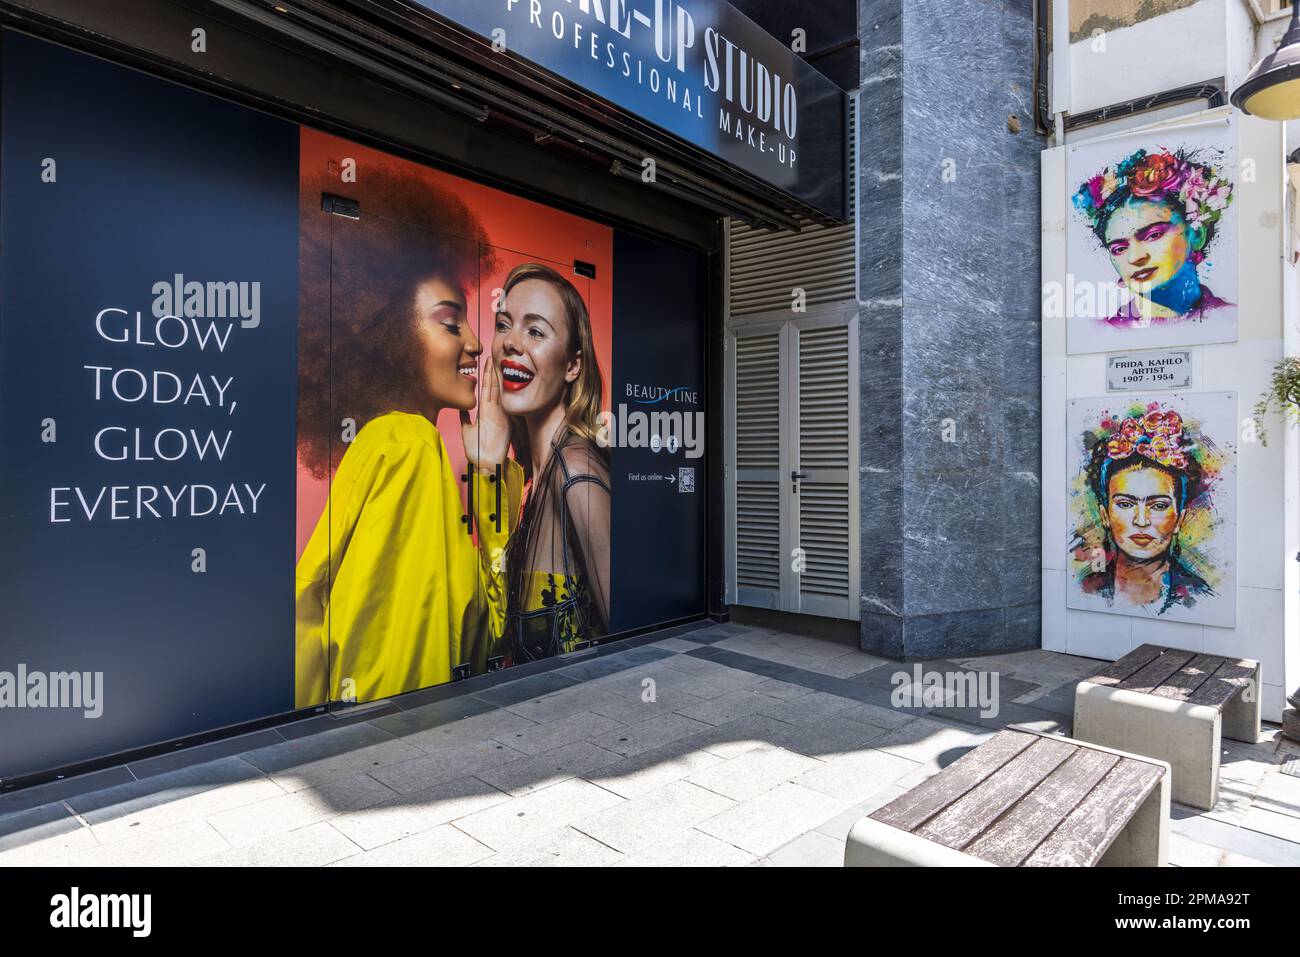 Frida Kahlo memoriale accanto a Makeup studio Beauty Line, che pubblicizza con il seguente slogan: 'Glow Today, Glow Everyday' a Limassol, Cipro Foto Stock